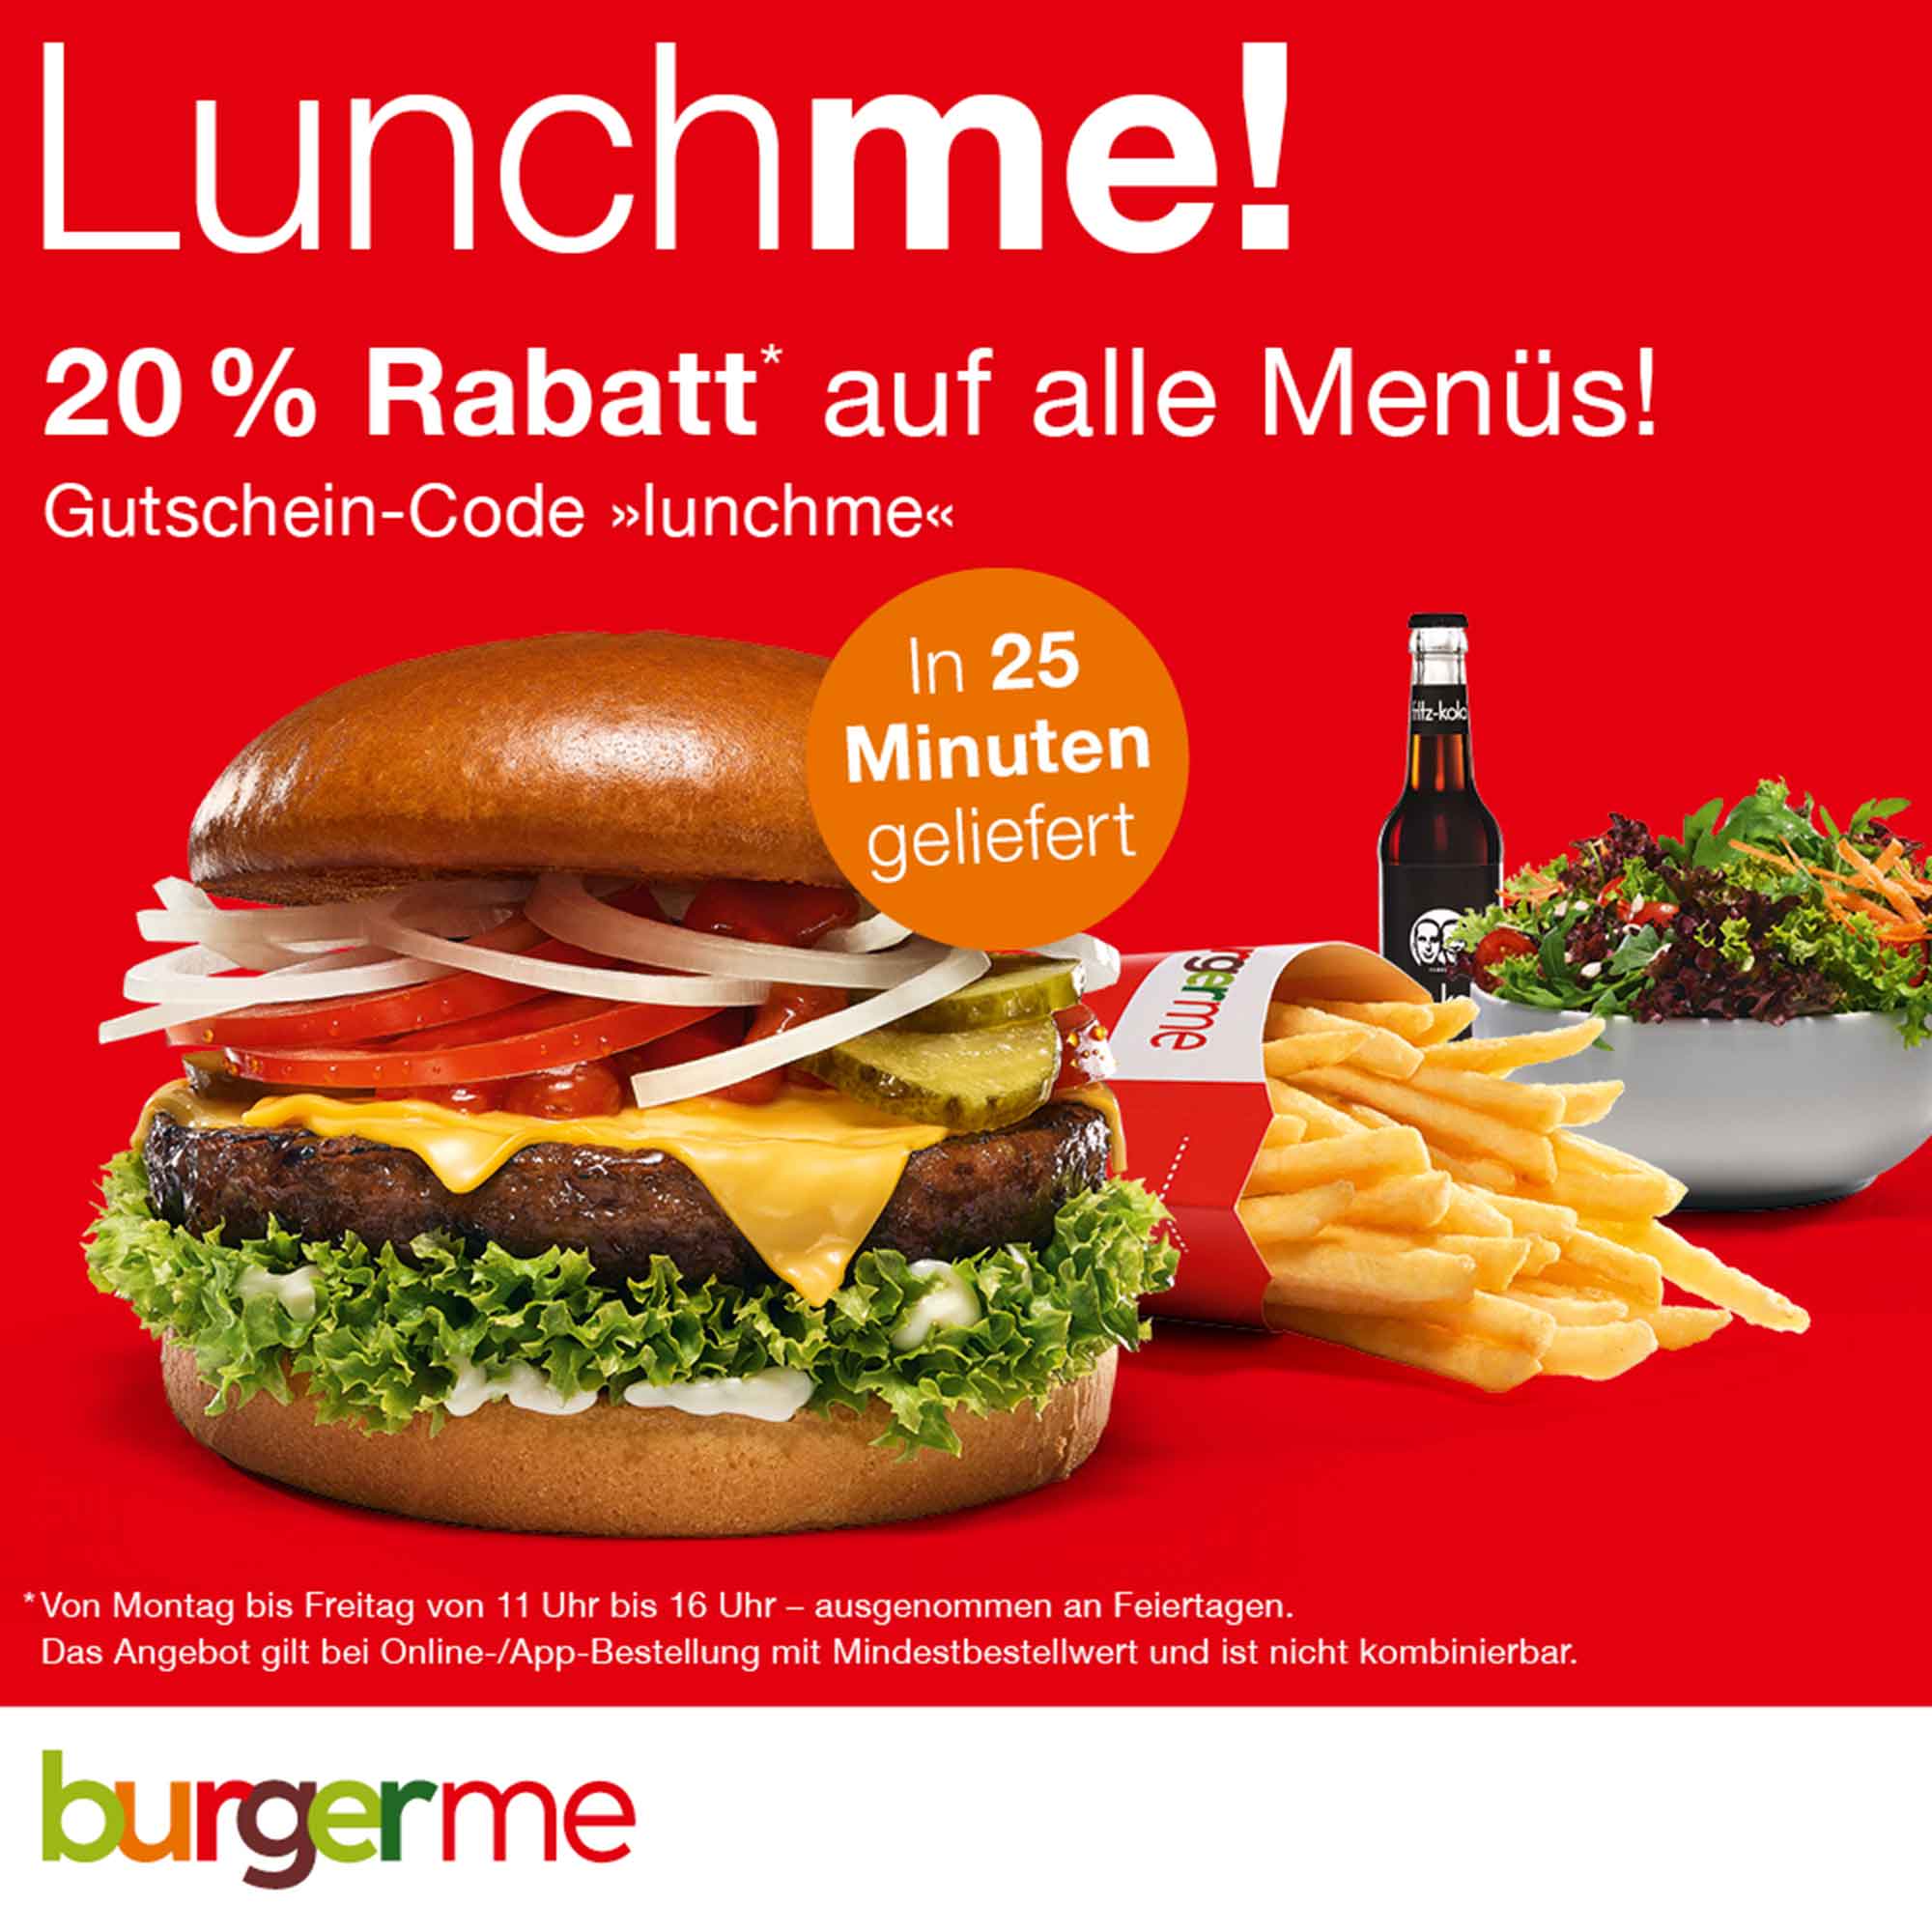 burgerme Gütersloh, Anzeige: der Lieferdienst für frische Burger und Salate, jetzt bestellen